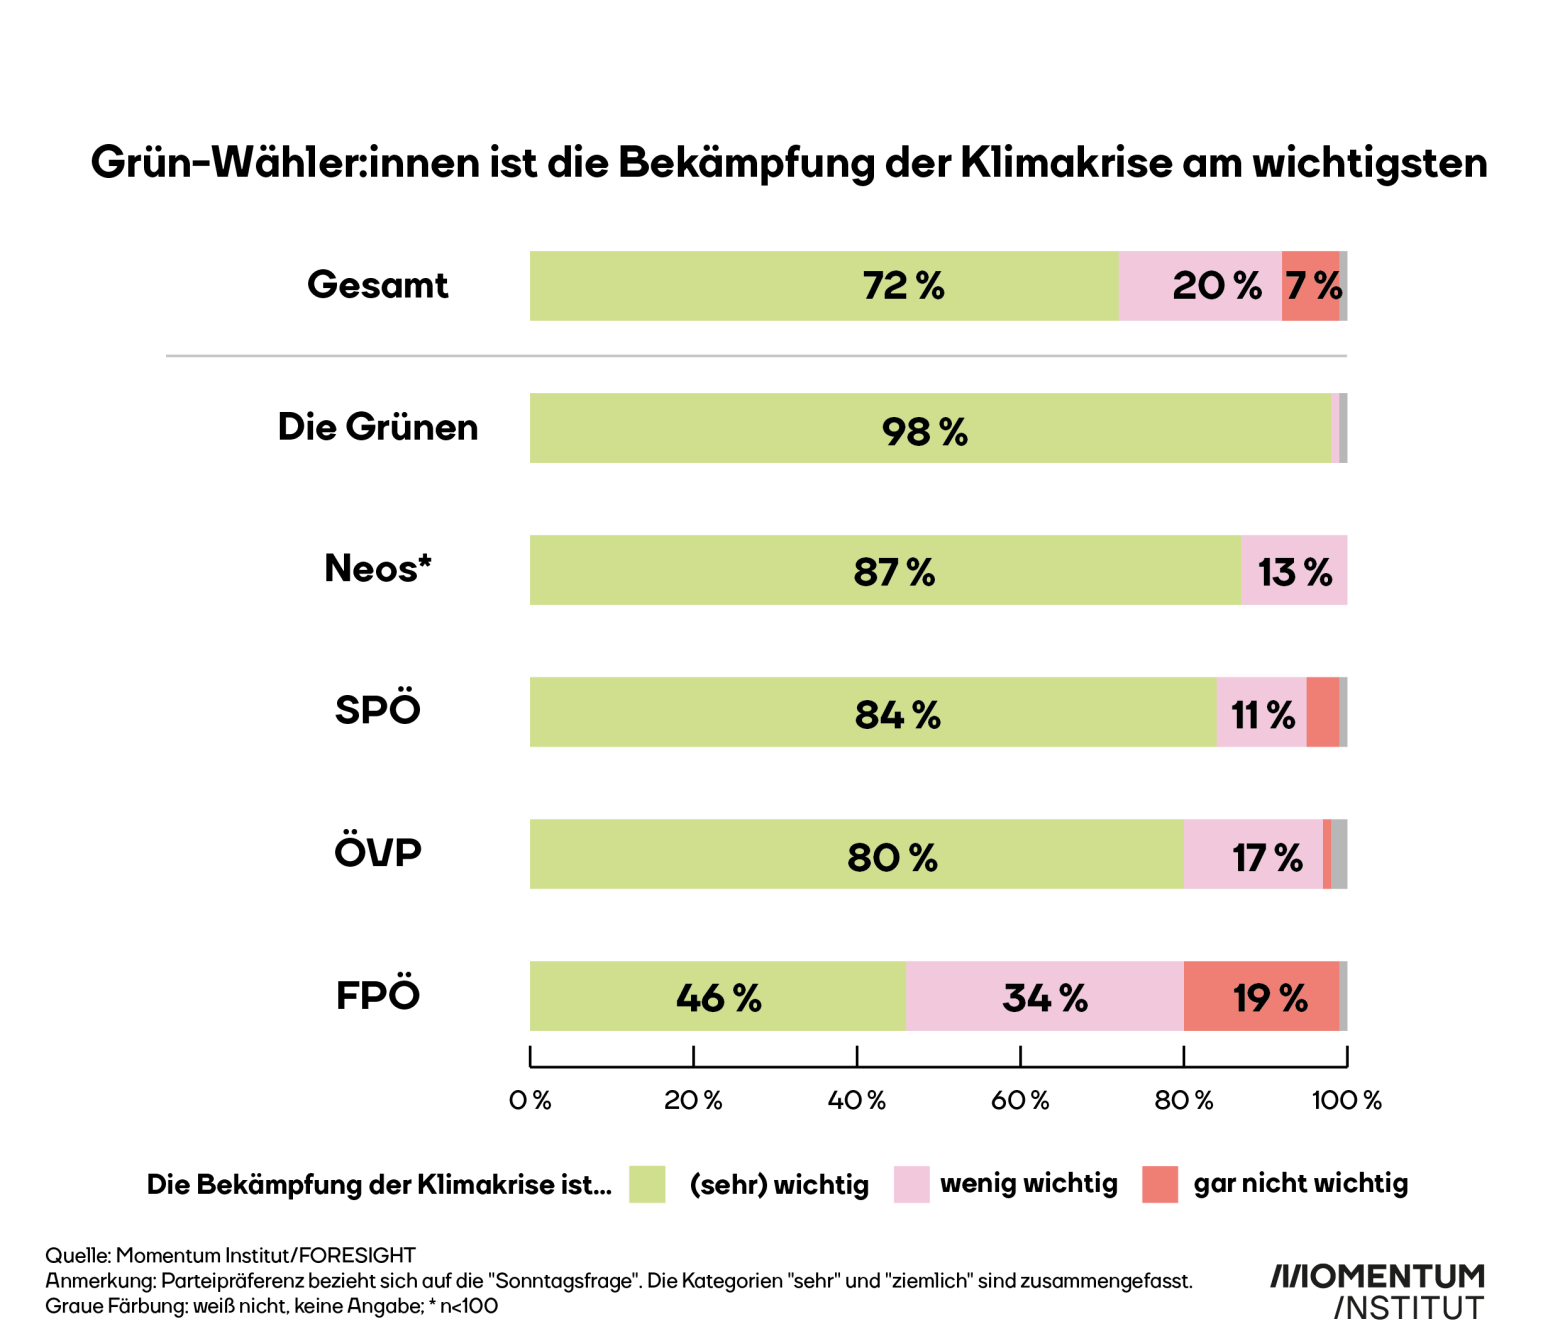 Grün-Wähler:innen ist Klimaschutz am wichtigsten. 98 % stimmen dem zu. Auch bei den anderen Parteien sind Mehrheiten für die Bekämpfung der Klimakrise. Lediglich bei der FPÖ sind es mit 46 % weniger als die Hälfte.